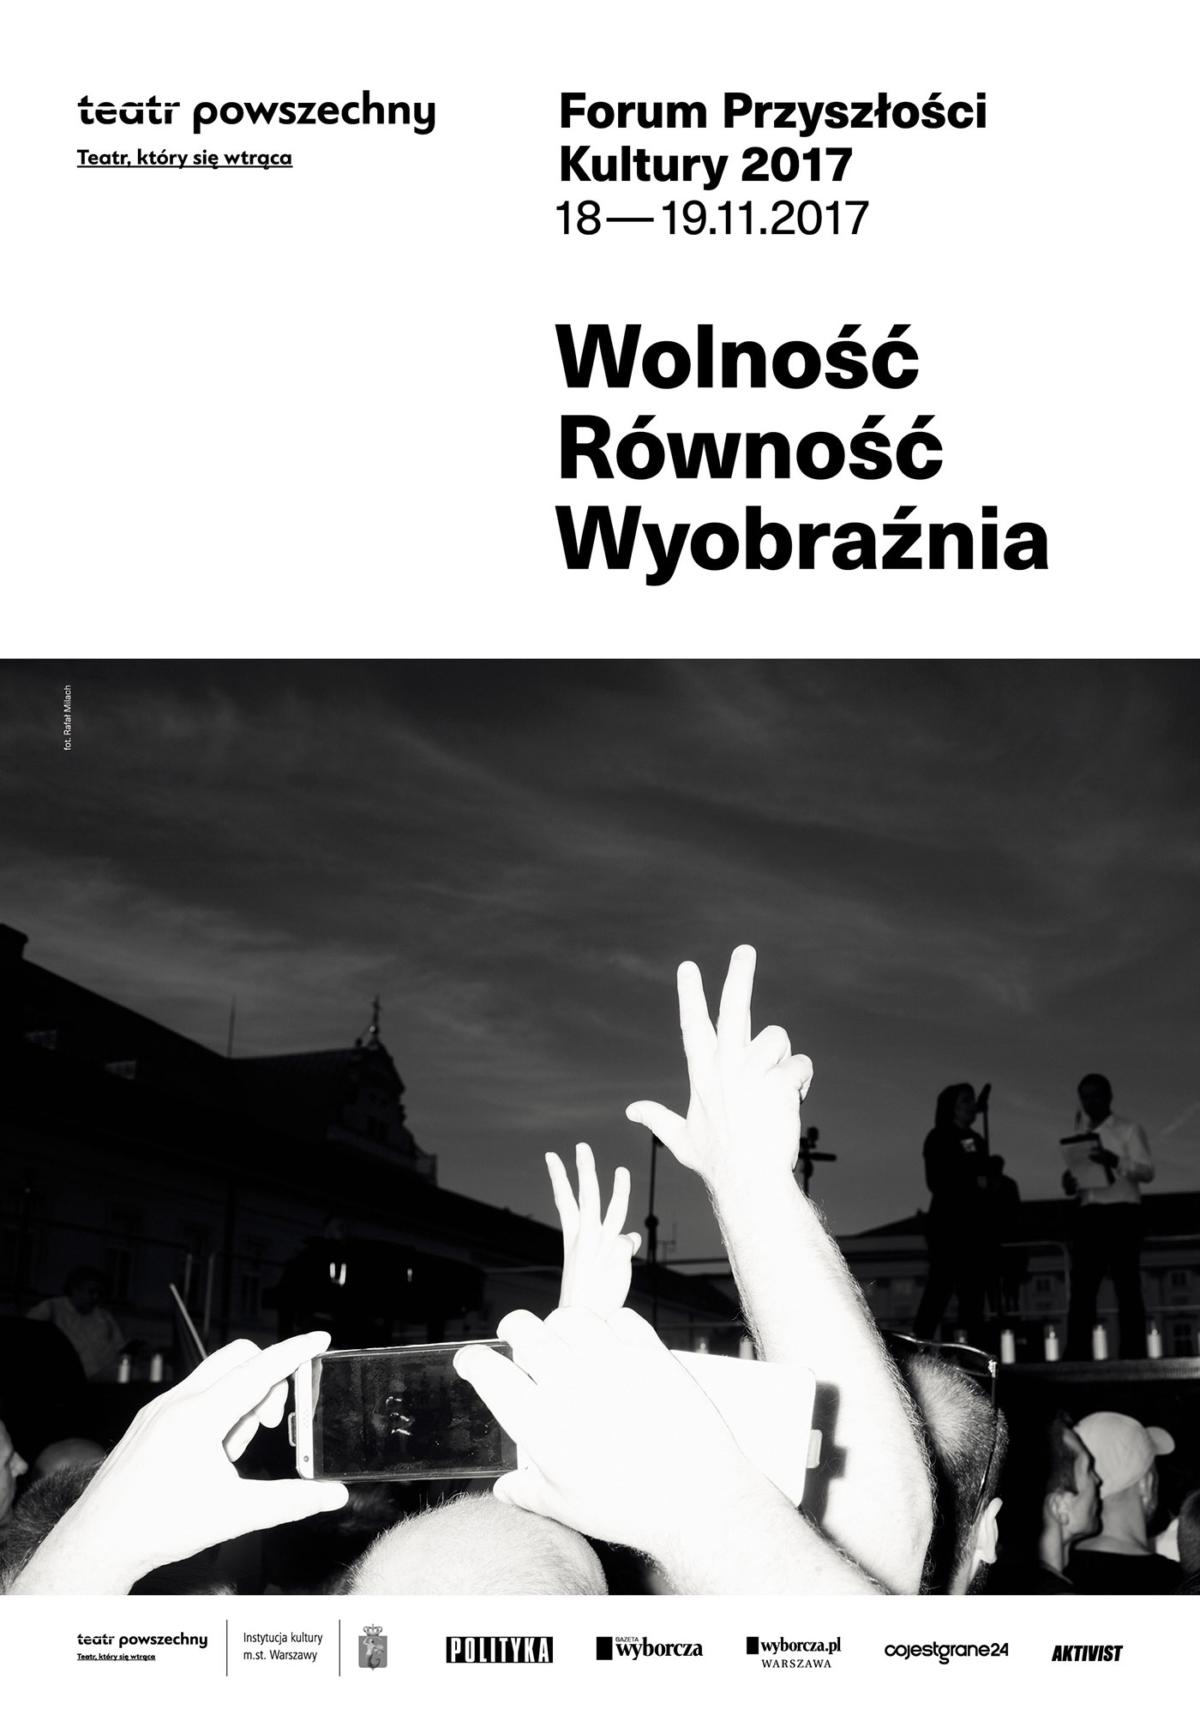 Forum Przyszłości Kultury - plakat studio Homework, fot. Rafał Milach